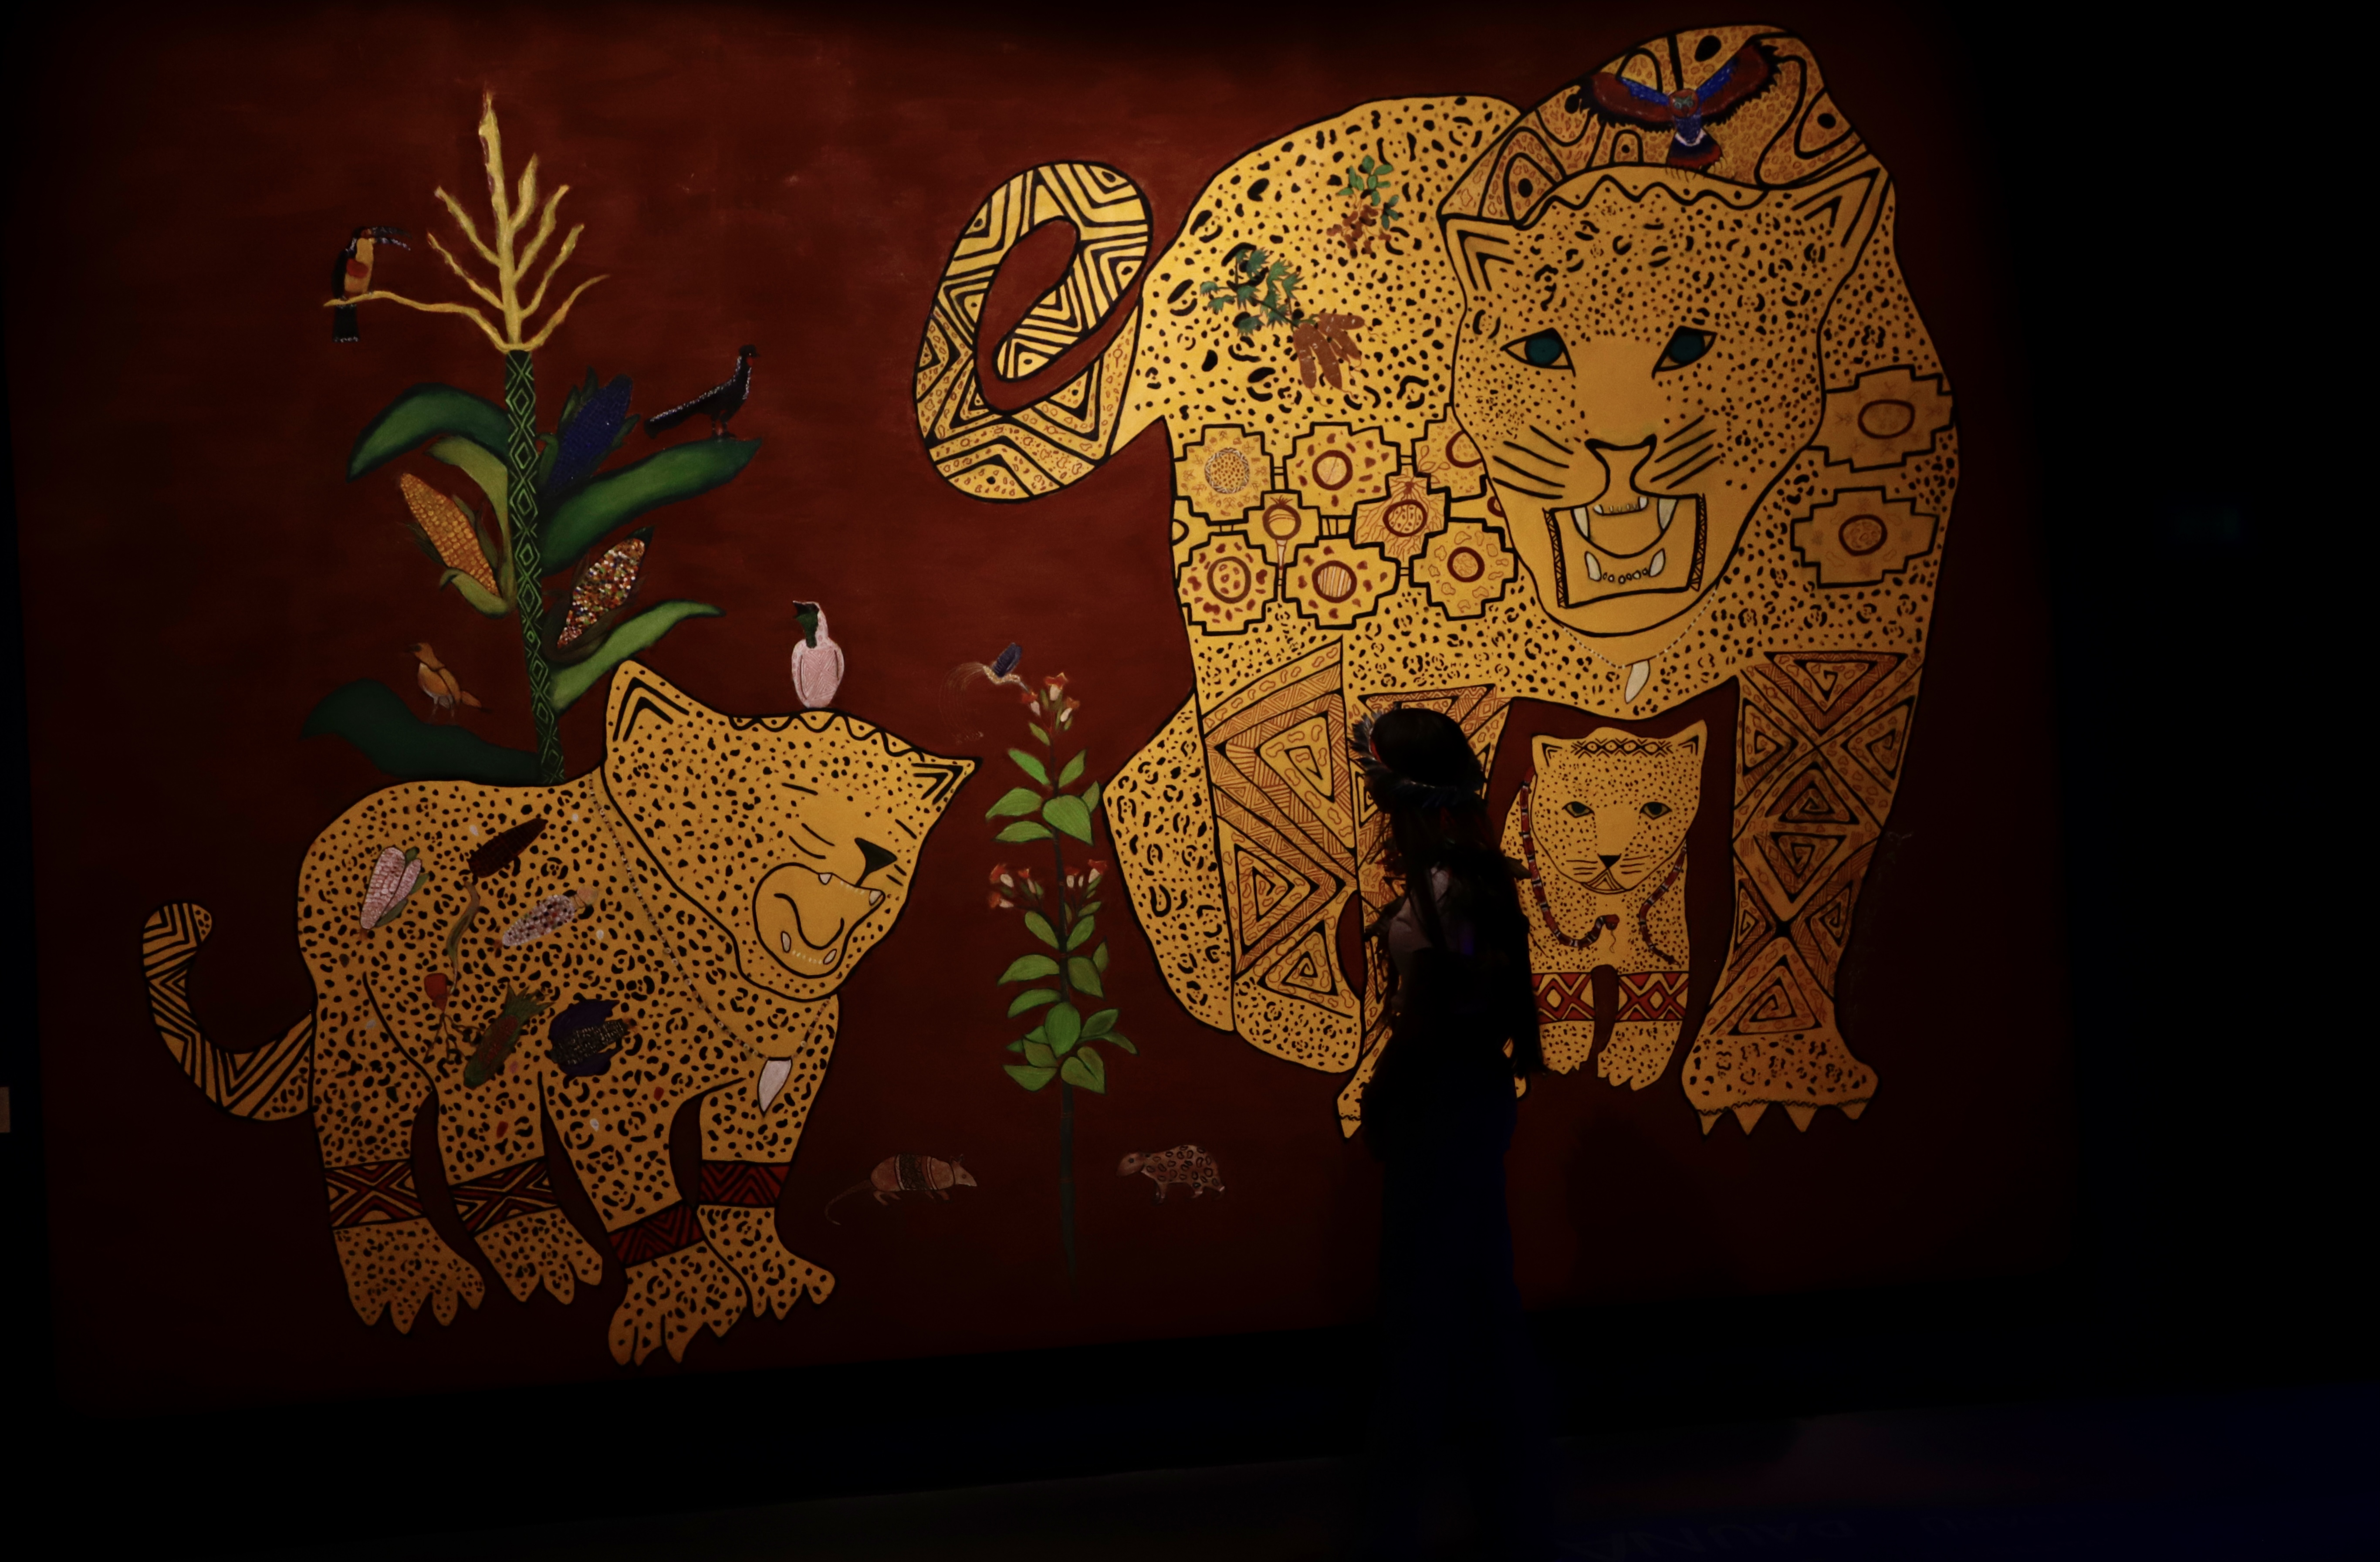 Mural de Tamikuã Txihi: "[é] forte a presença dos nossos encantados", diz Daiara Tukano 📷Ciete Silvério